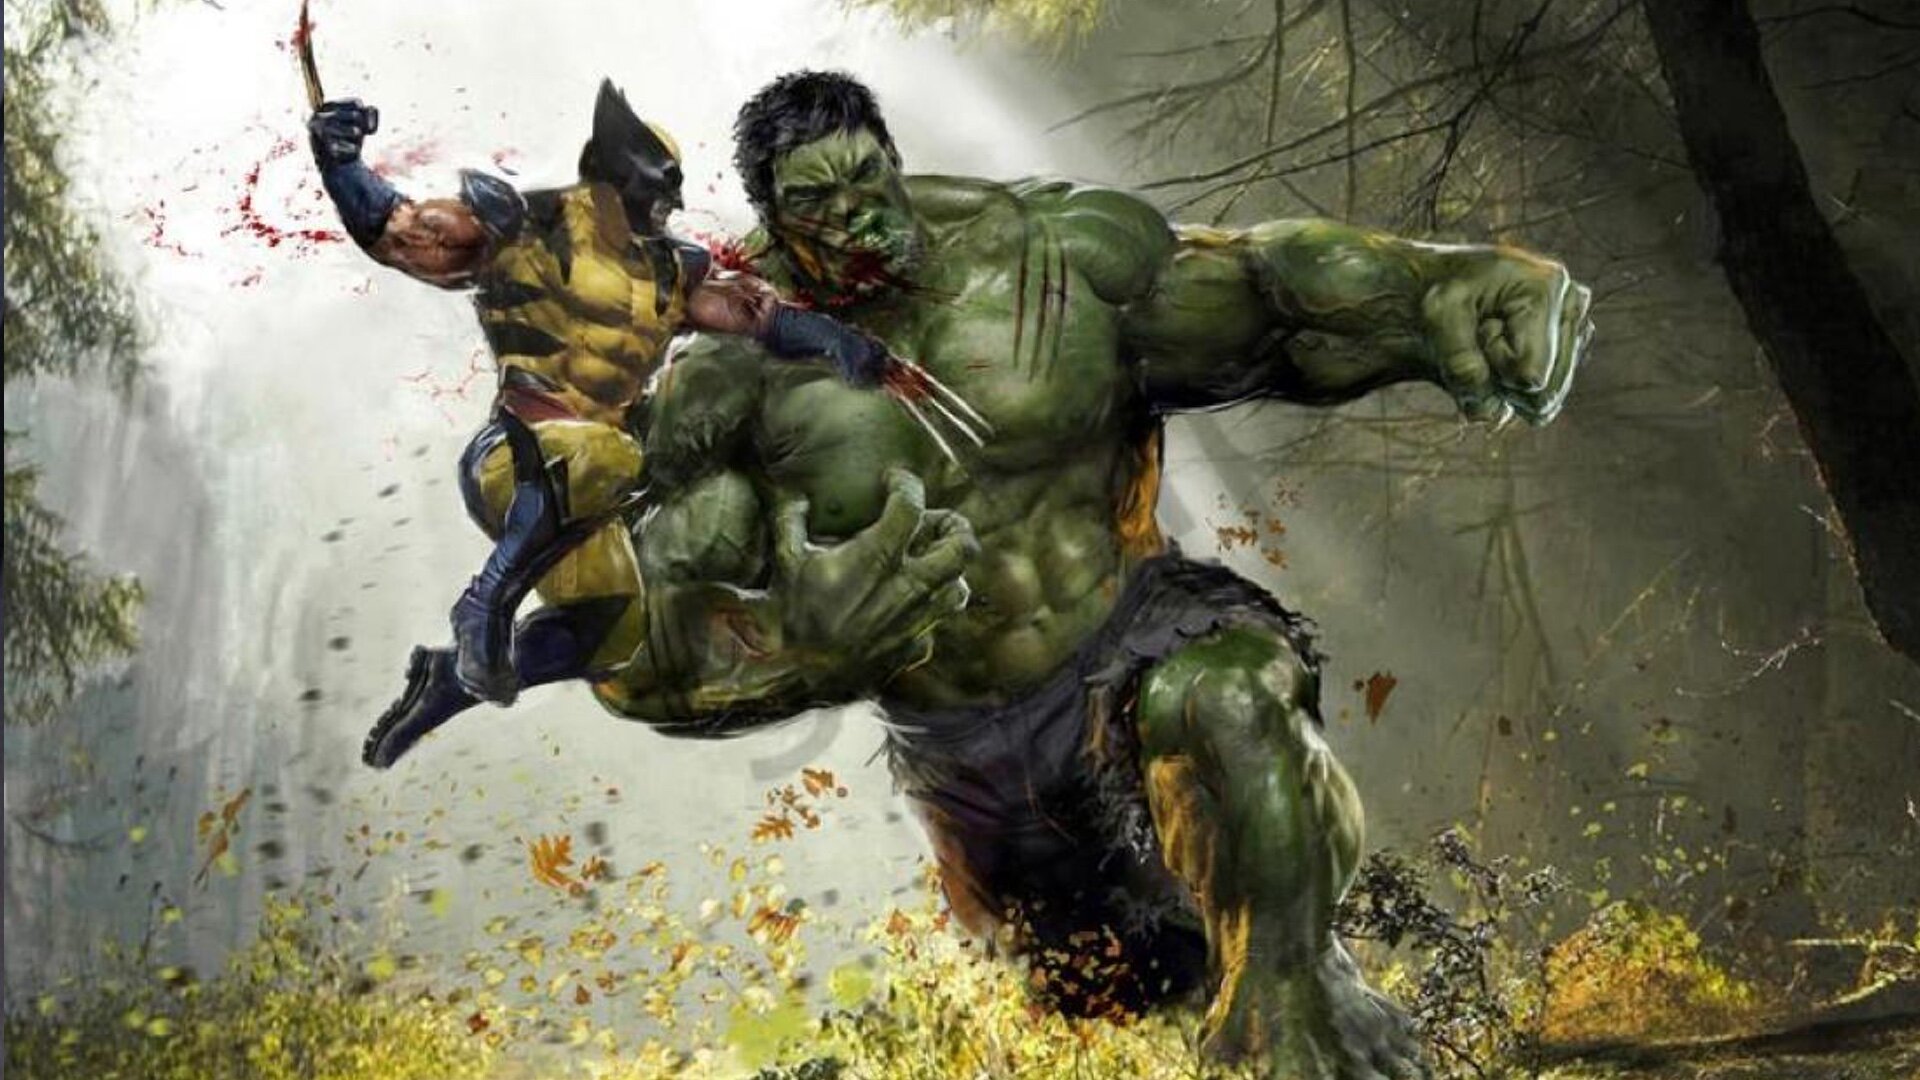 7 cenas de luta mais brutais do filme Wolverine, classificadas